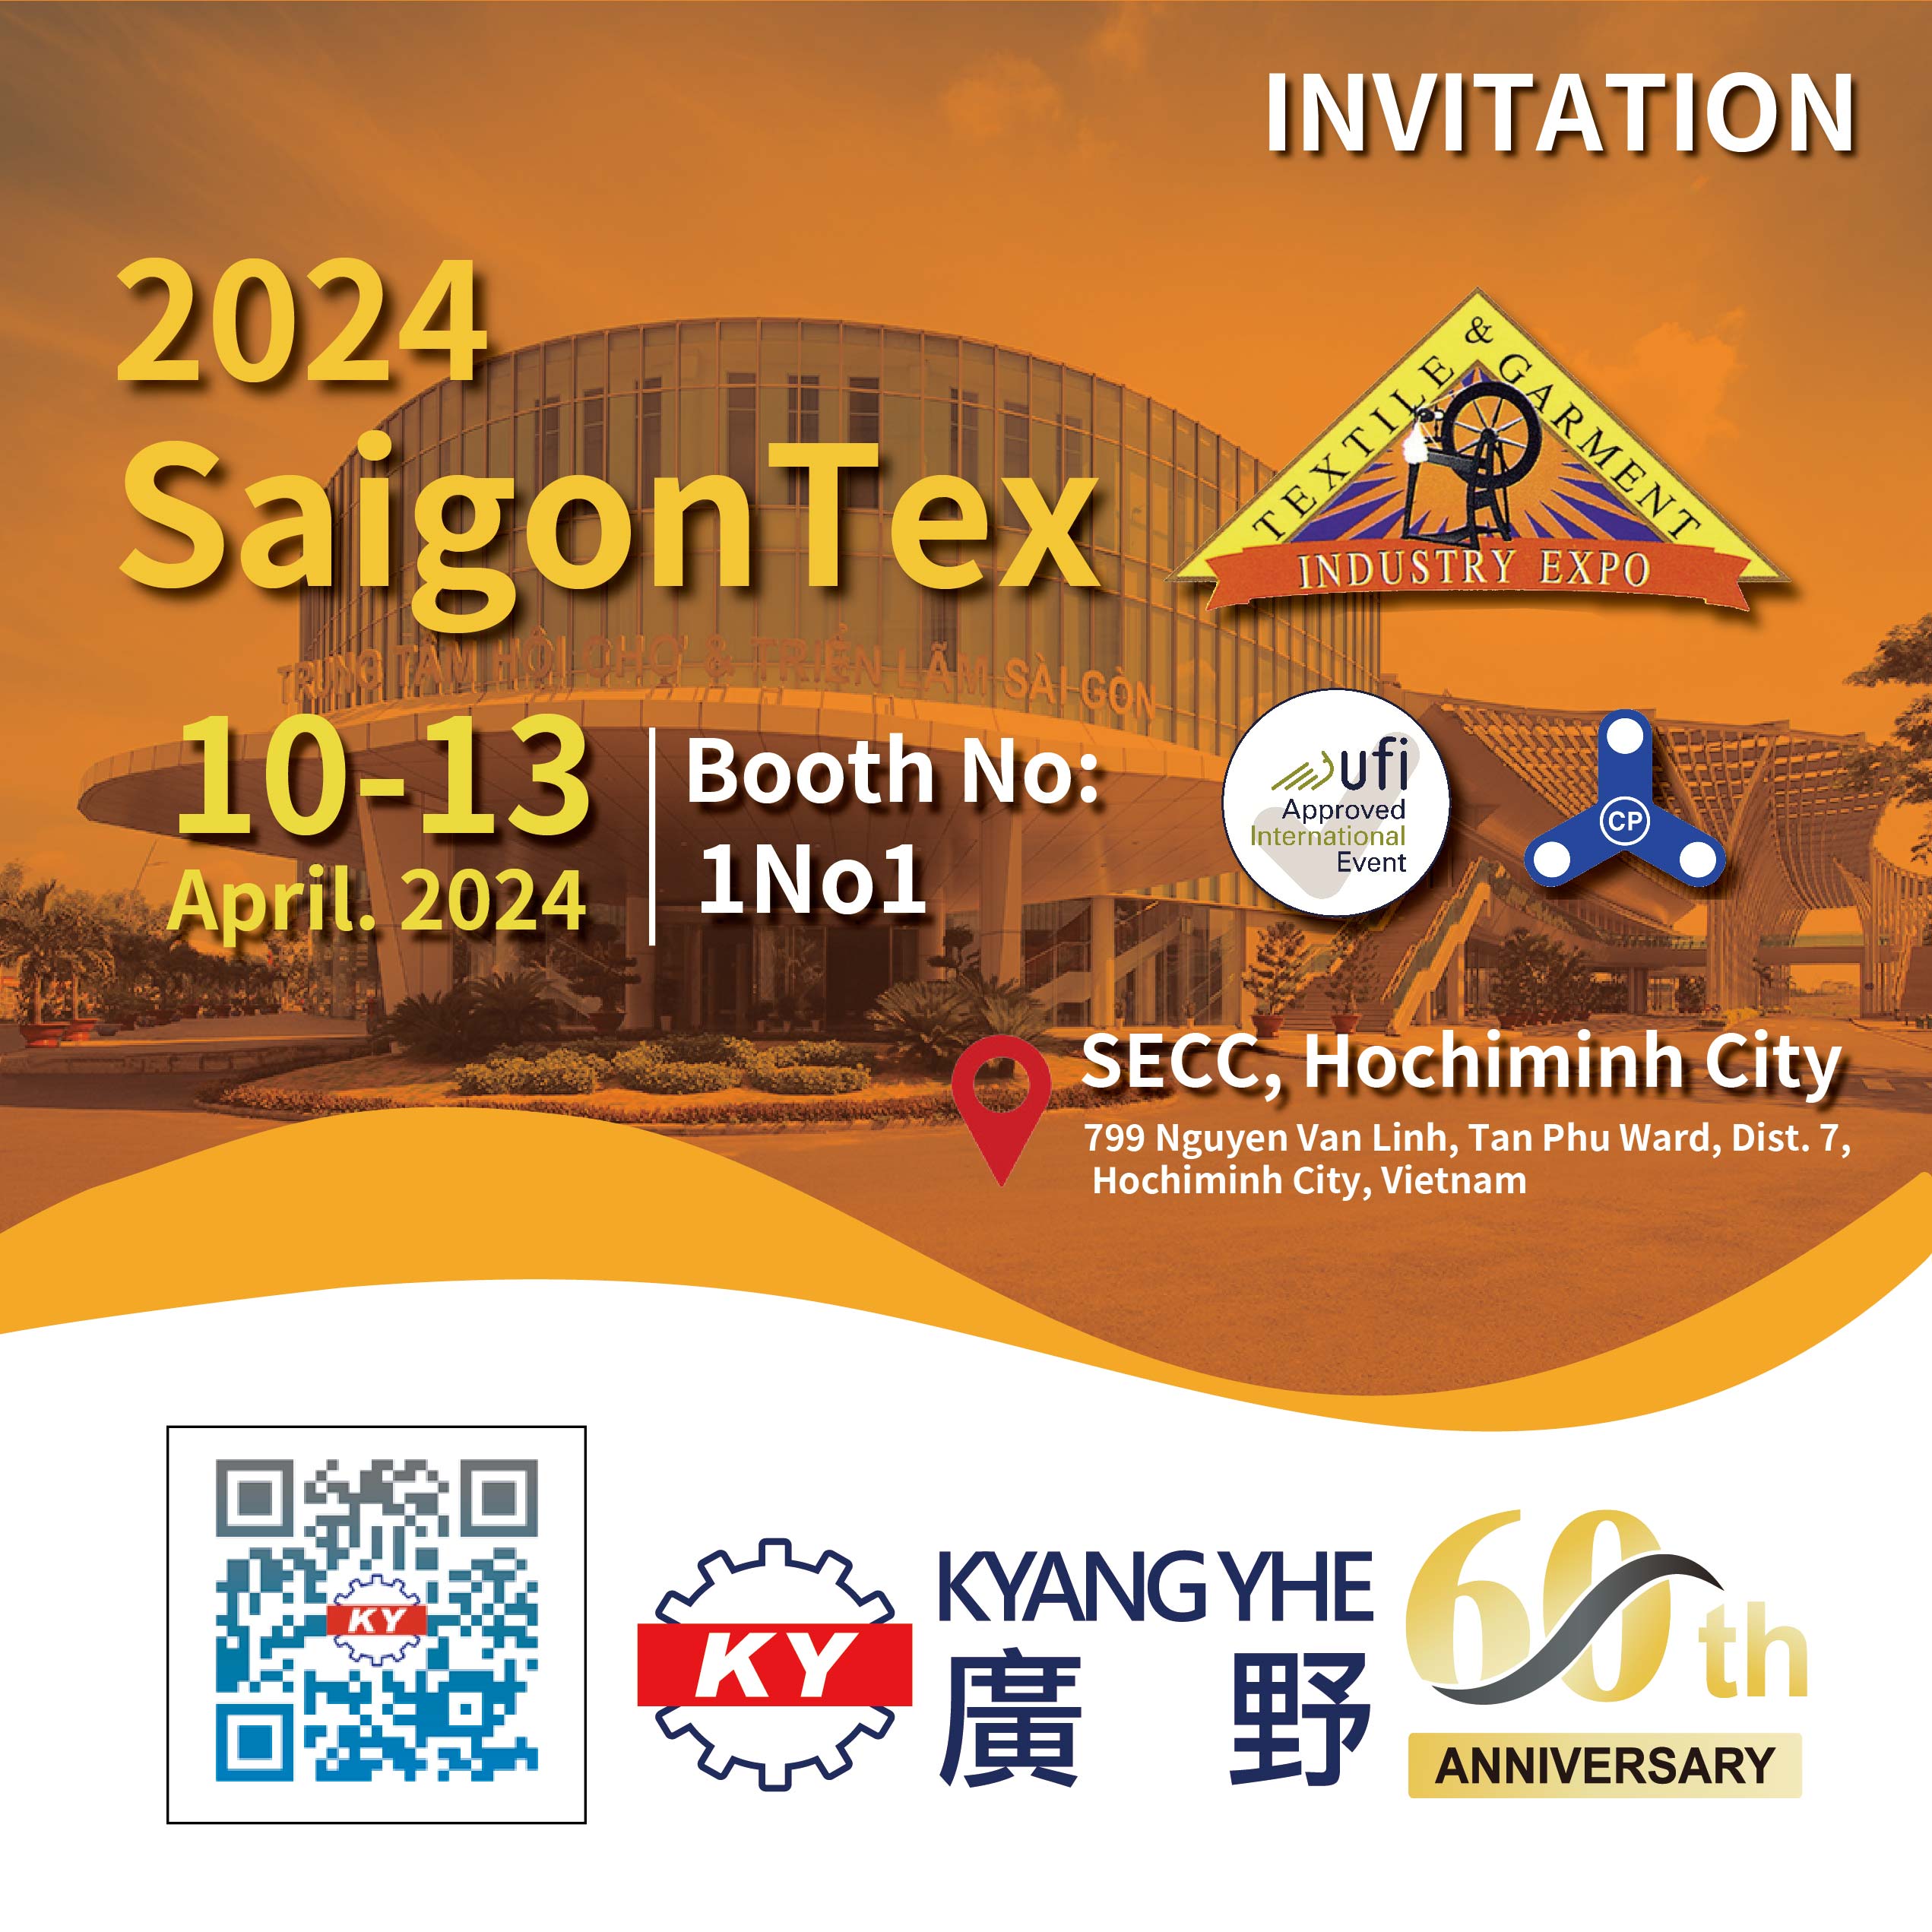 Kyang Yhe akan berpartisipasi dalam Pameran Industri Tekstil & Pakaian Vietnam Saigon 2024